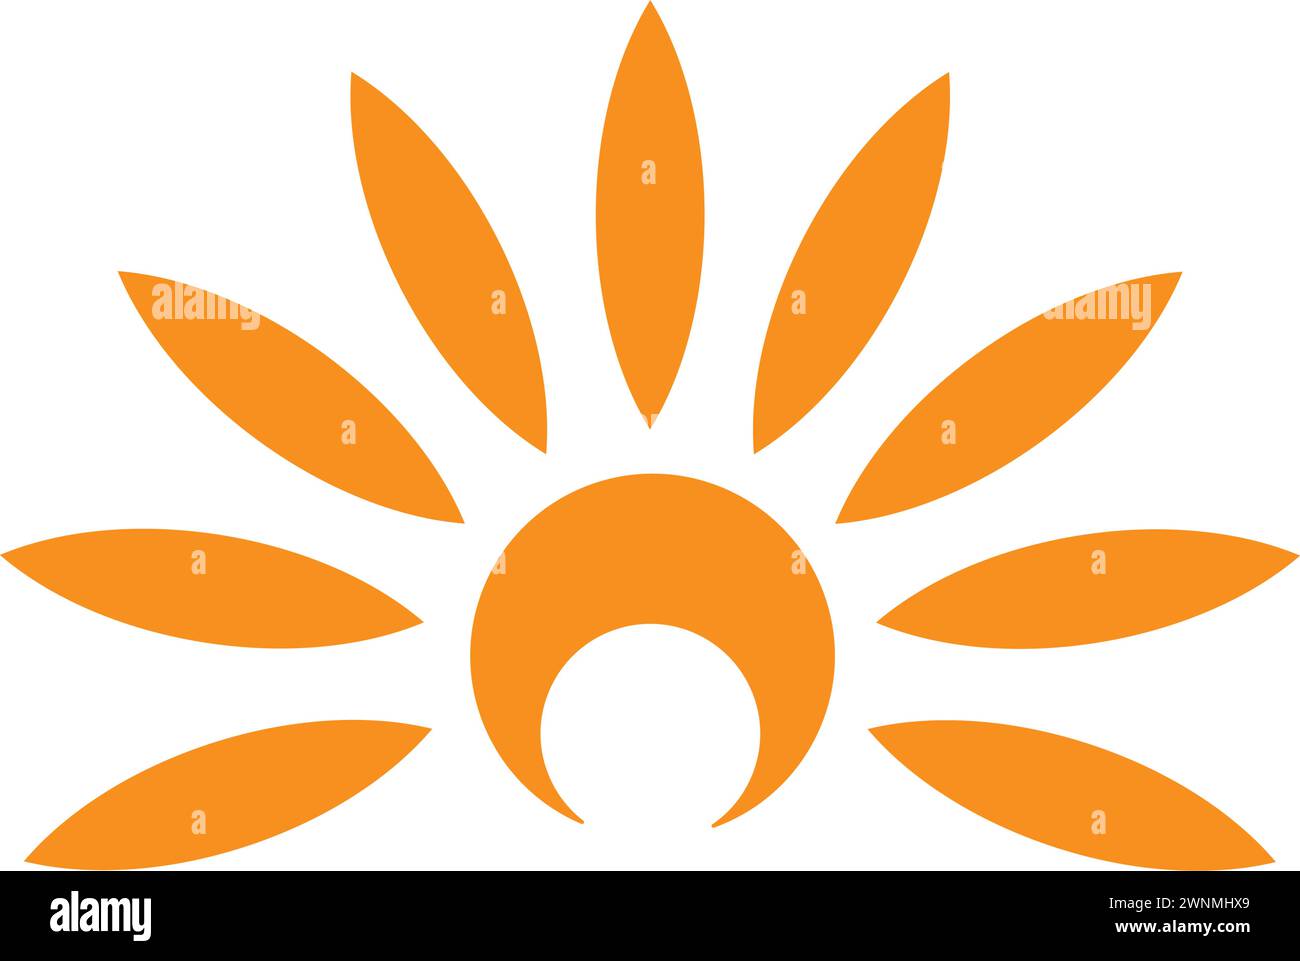 disegno dell'illustrazione vettoriale dell'icona del logo chiaro Illustrazione Vettoriale